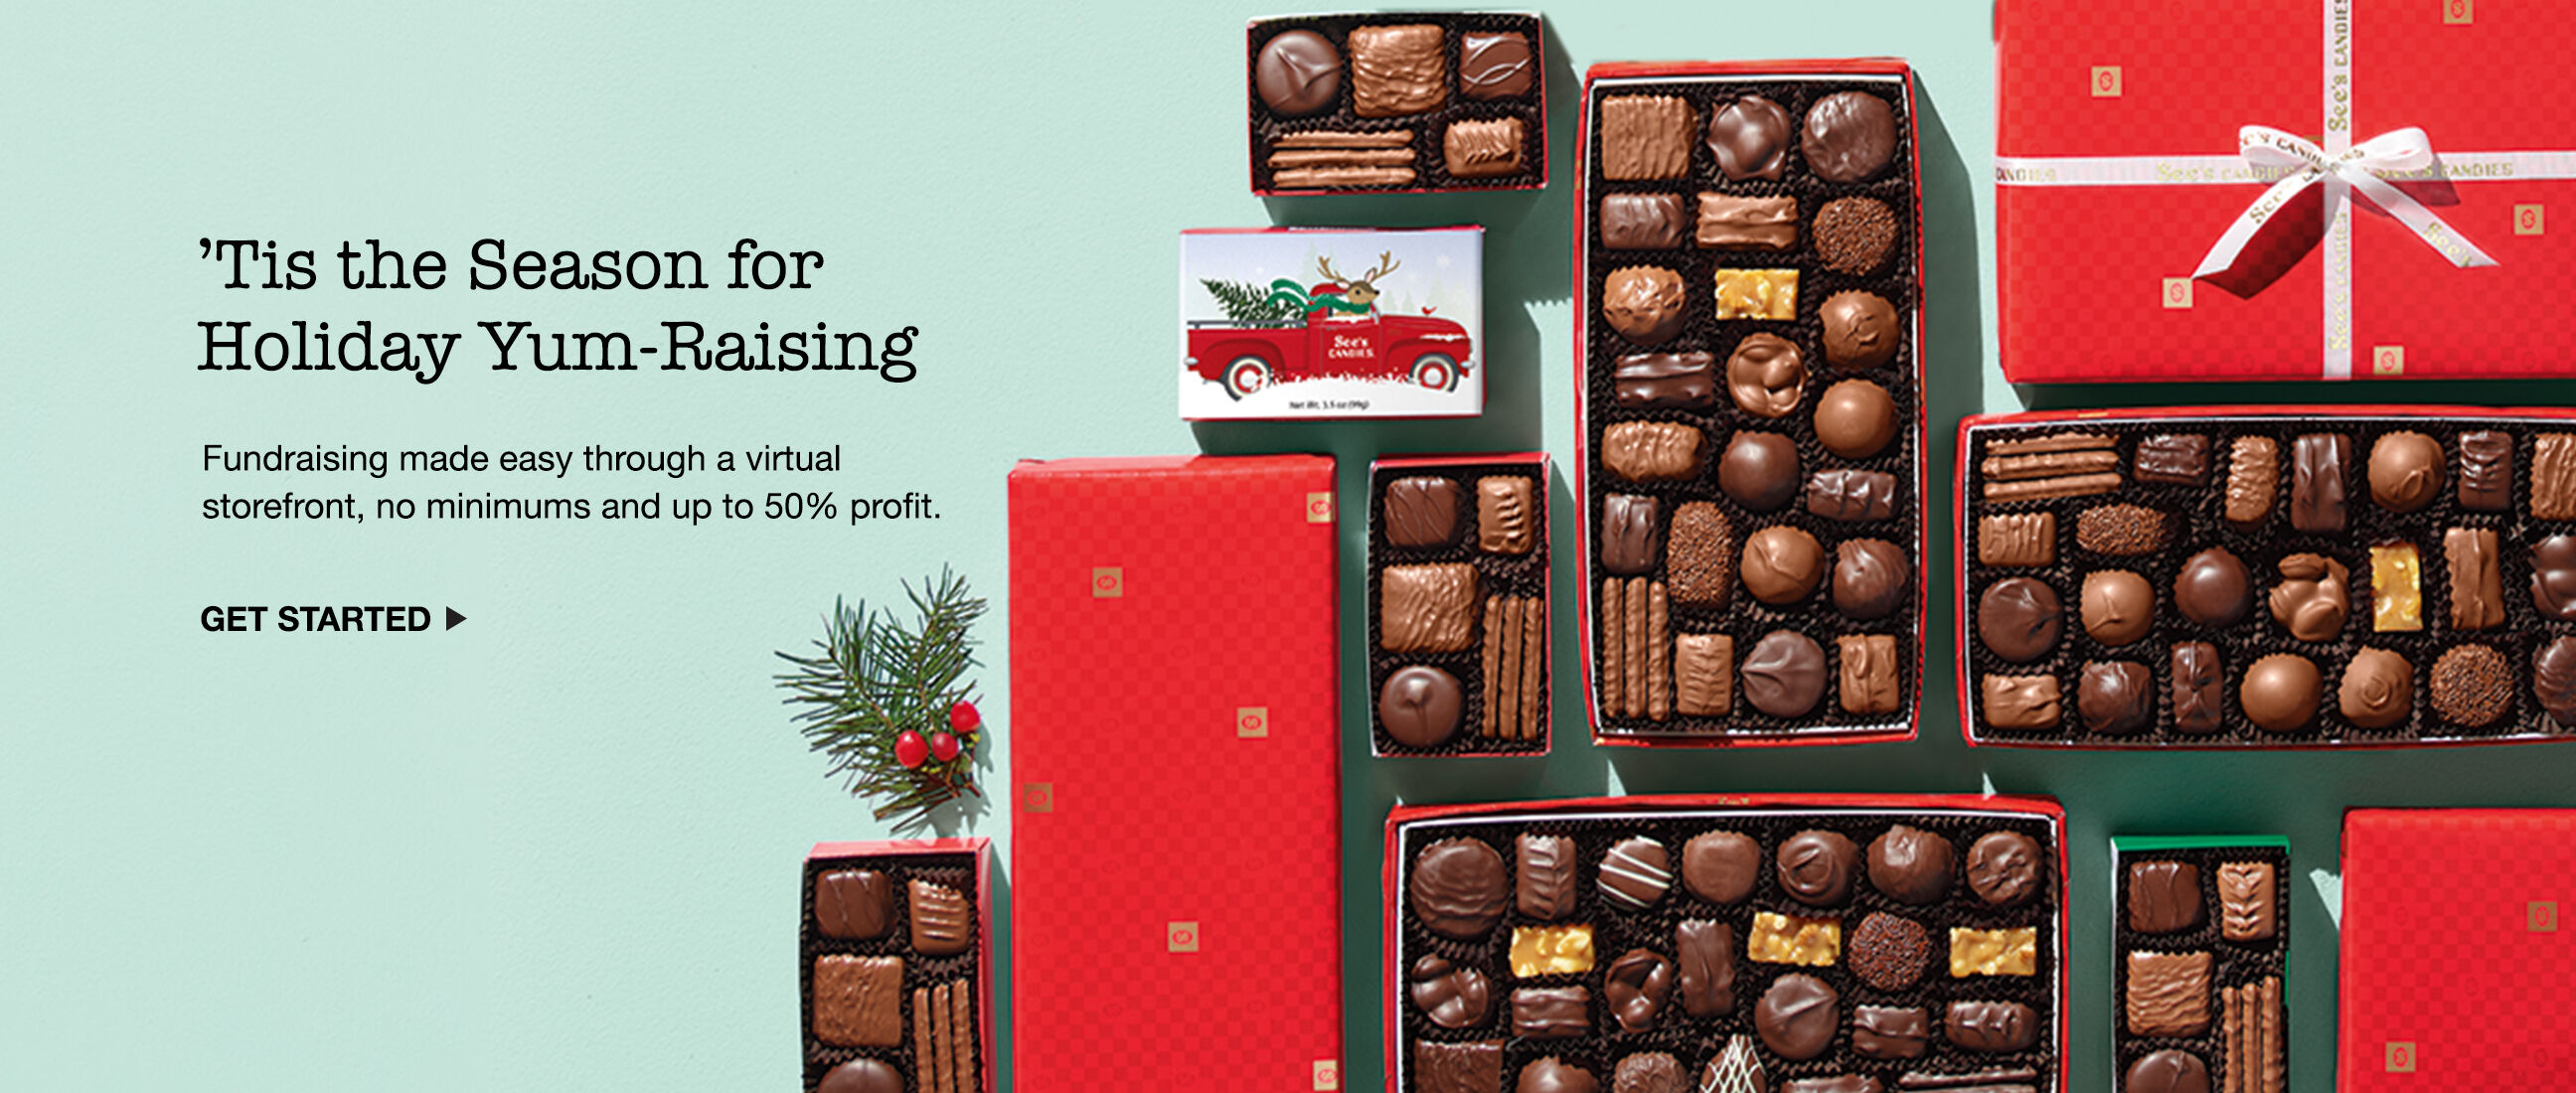 Winter Yum-Raising Fundraising Chocolates and Candies